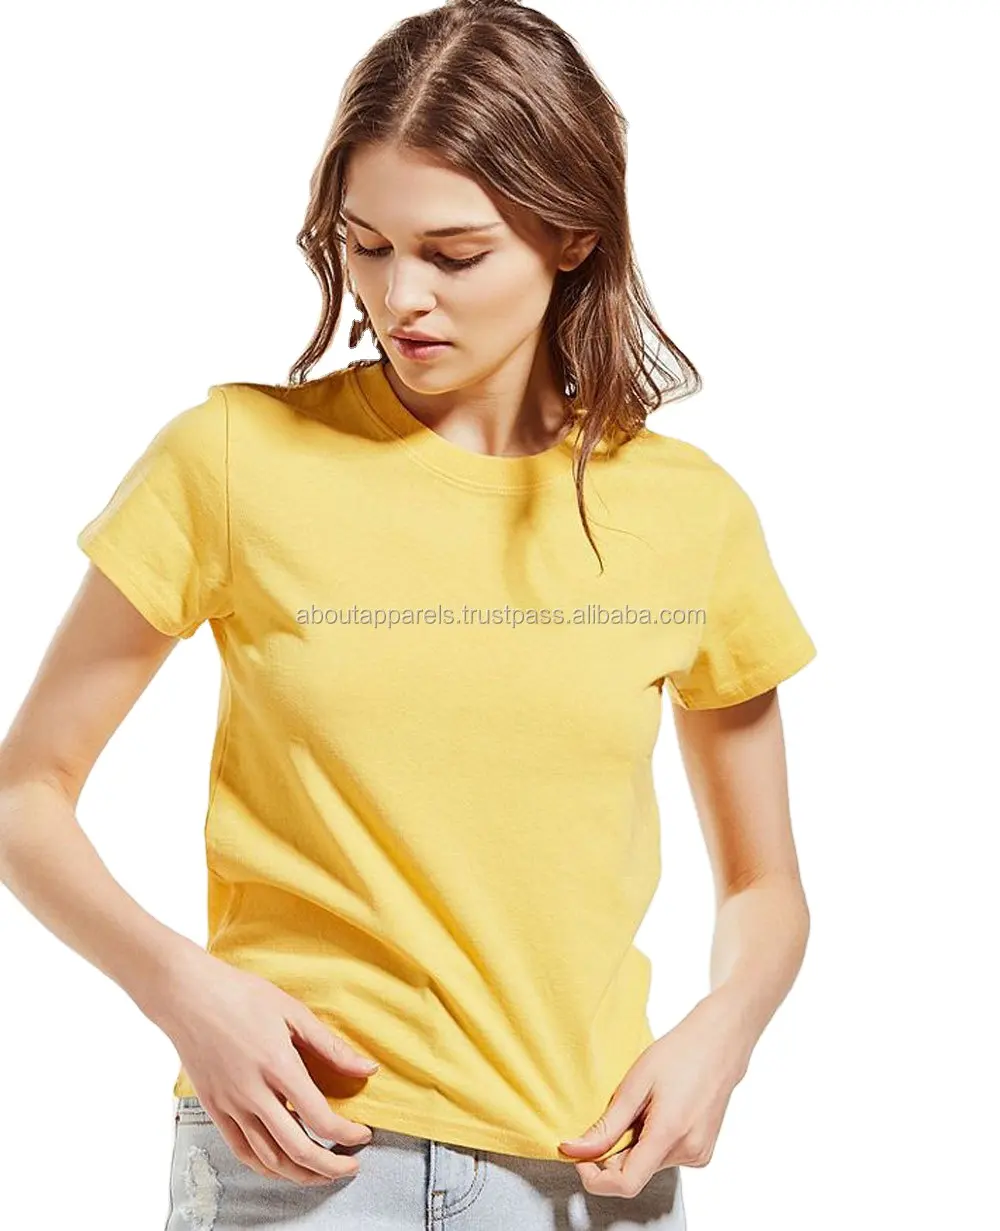 Camiseta de cáñamo barata de alta calidad, ropa blanca lisa con buen servicio, nueva apariencia, amarilla ligera